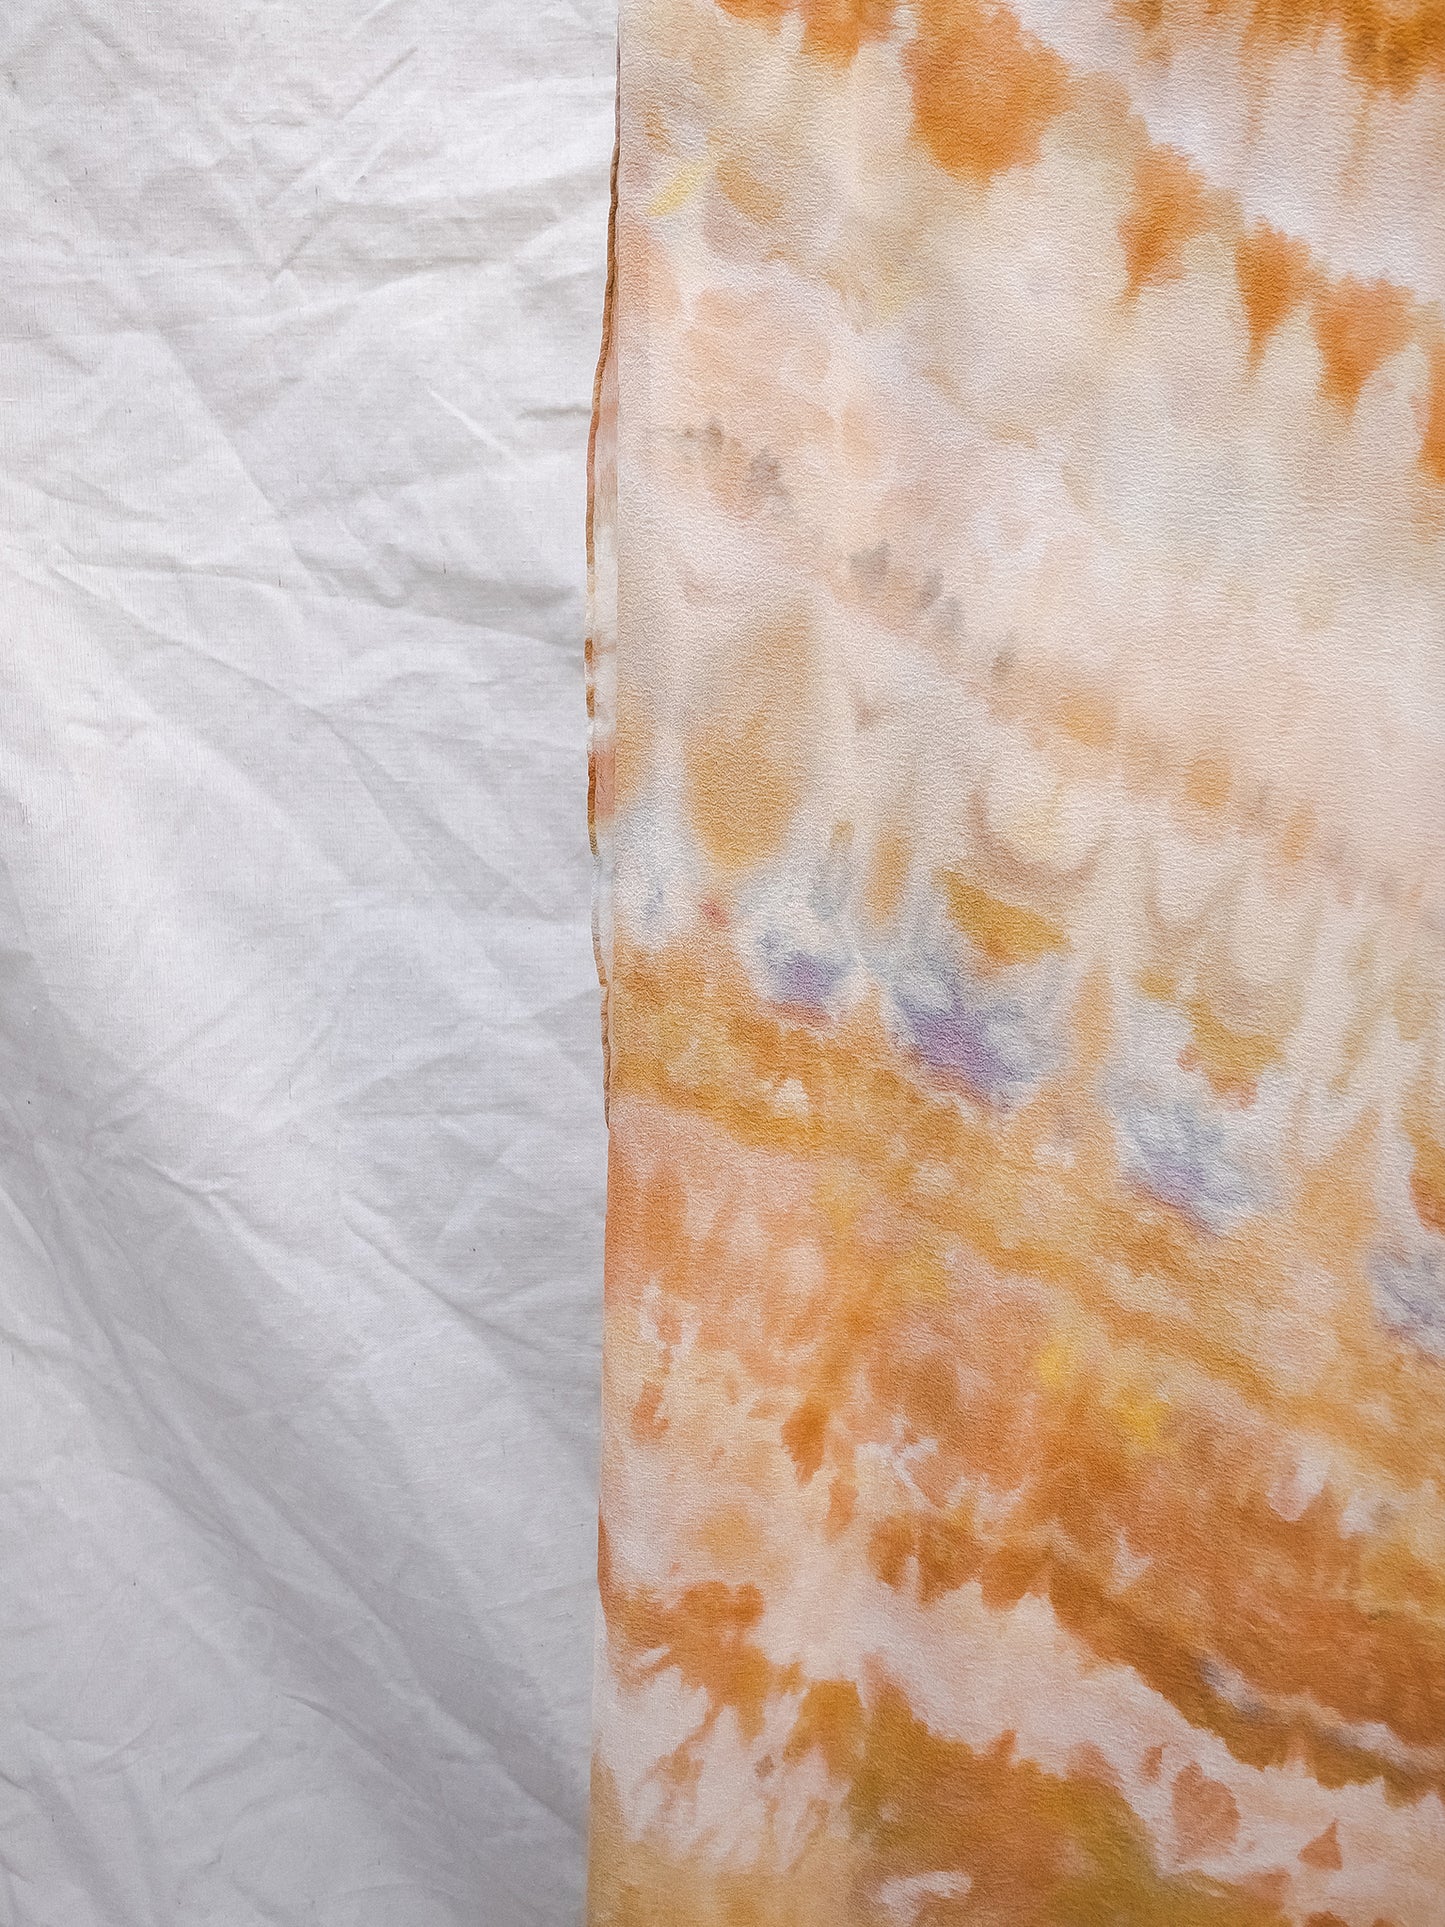 Sarong - hand dyed 100% silk charmeuse